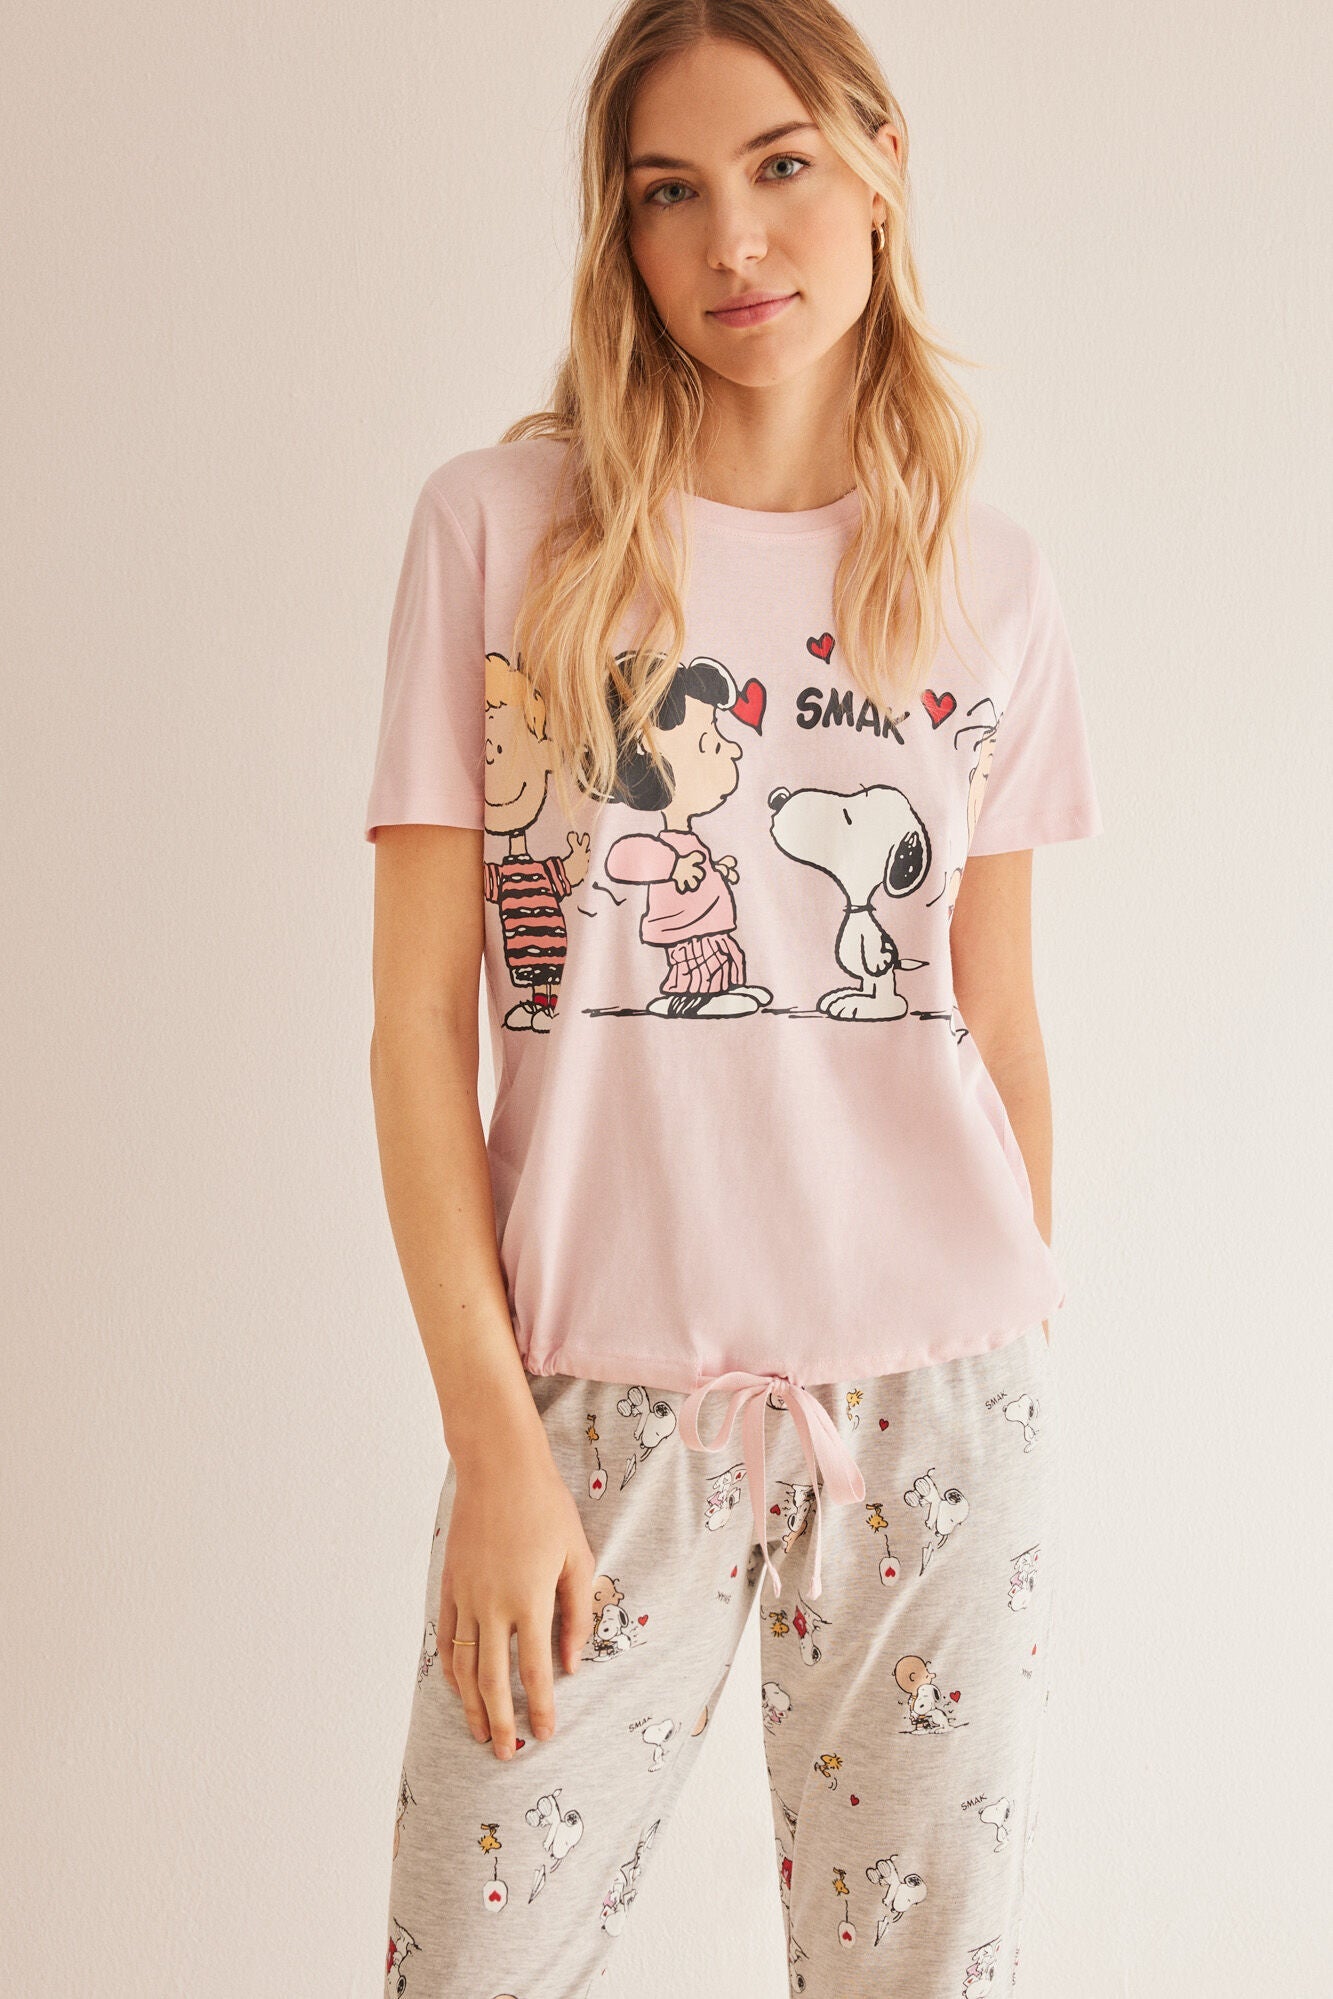 Snoopy Pyjamas